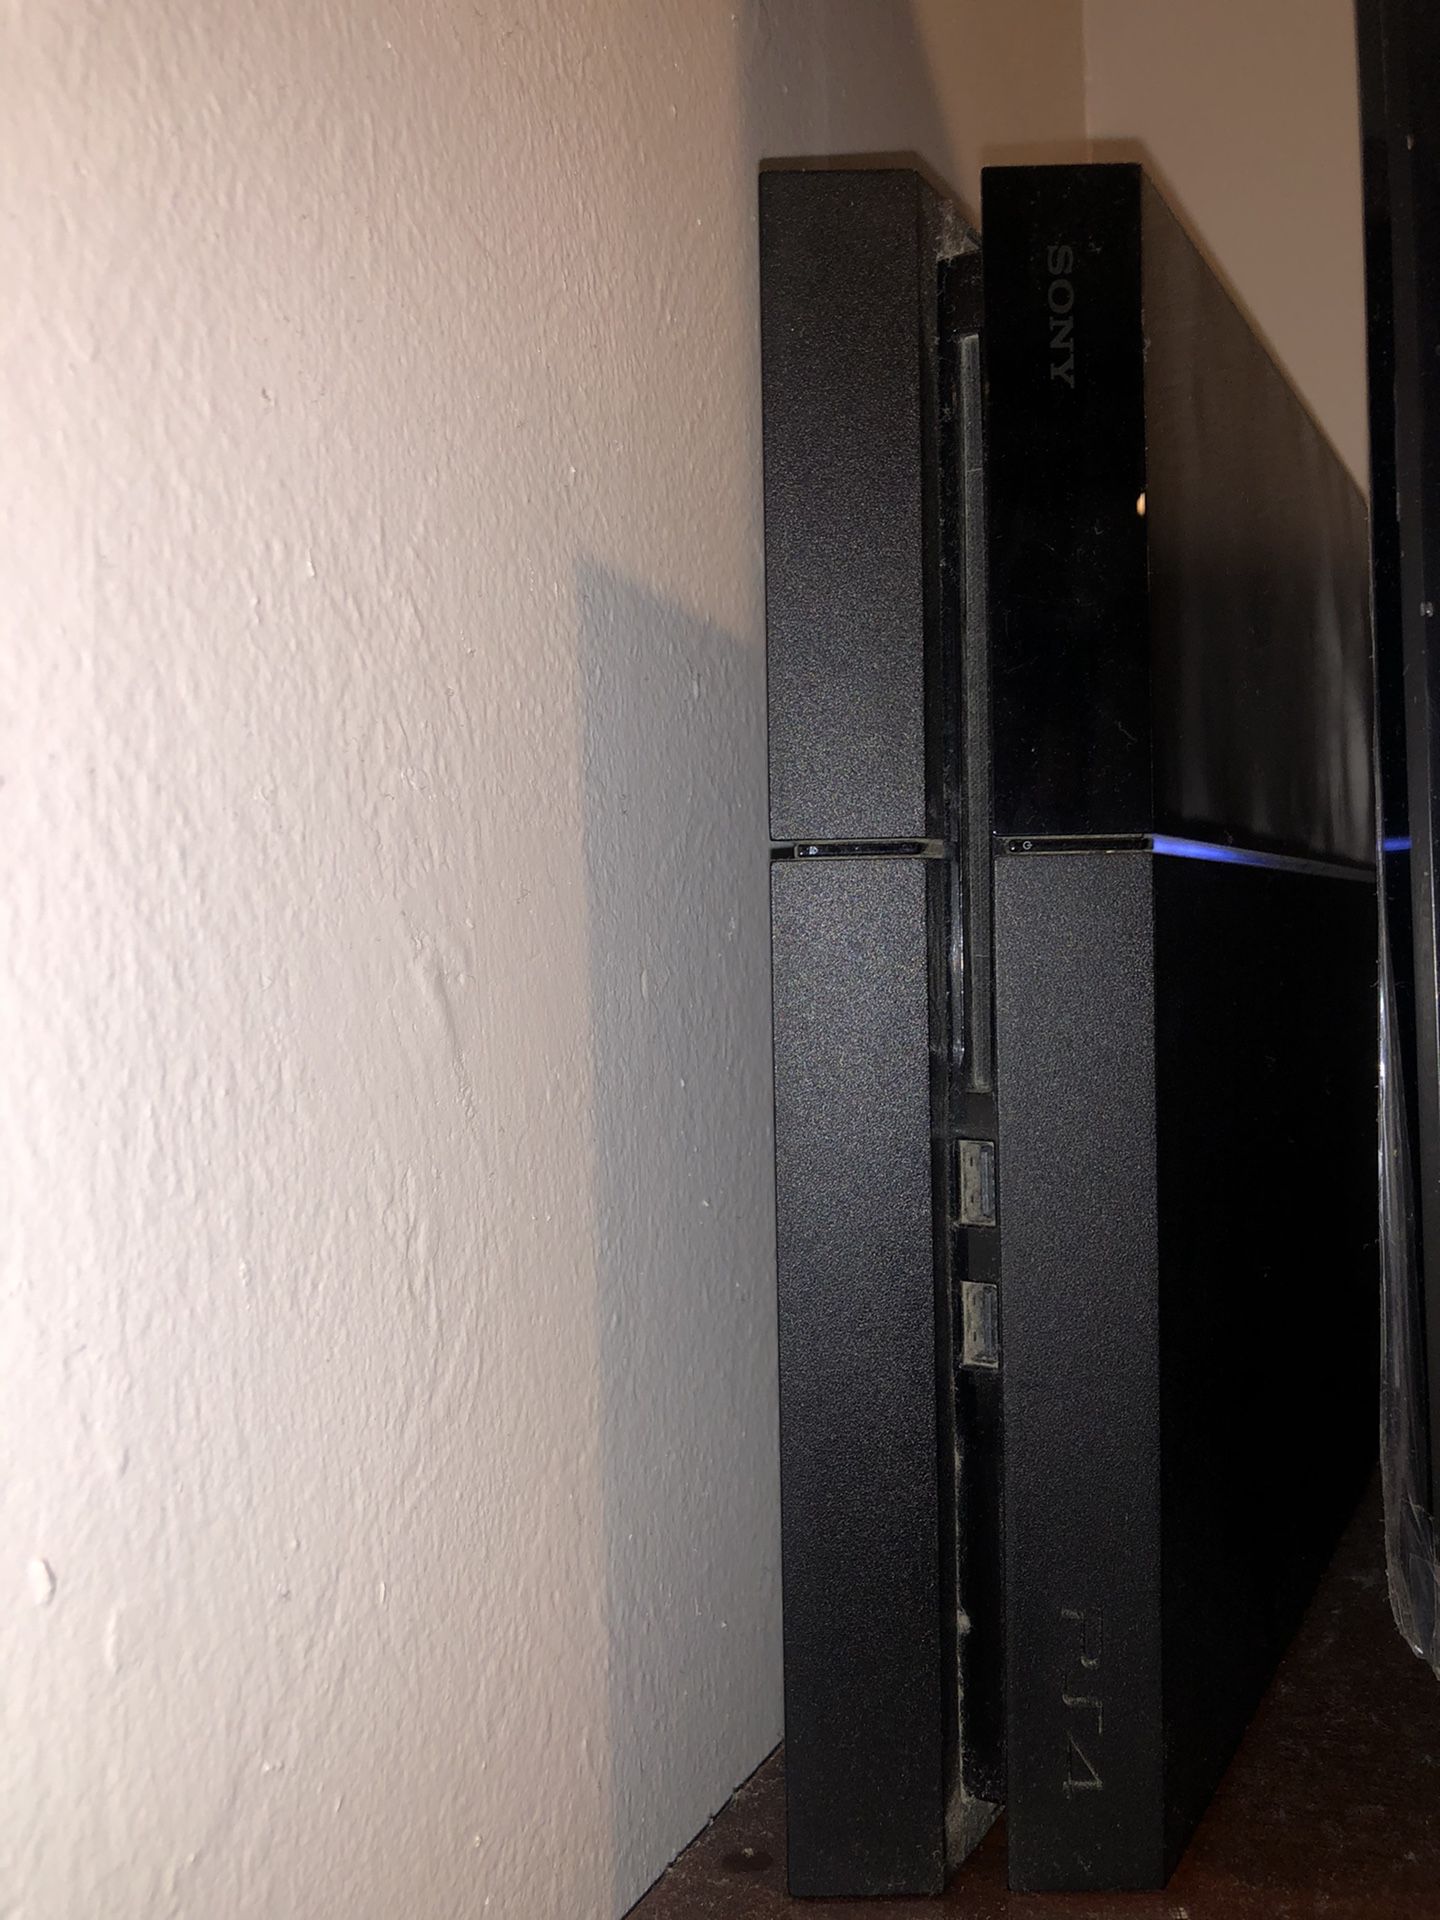 PS4 - PlayStation 4